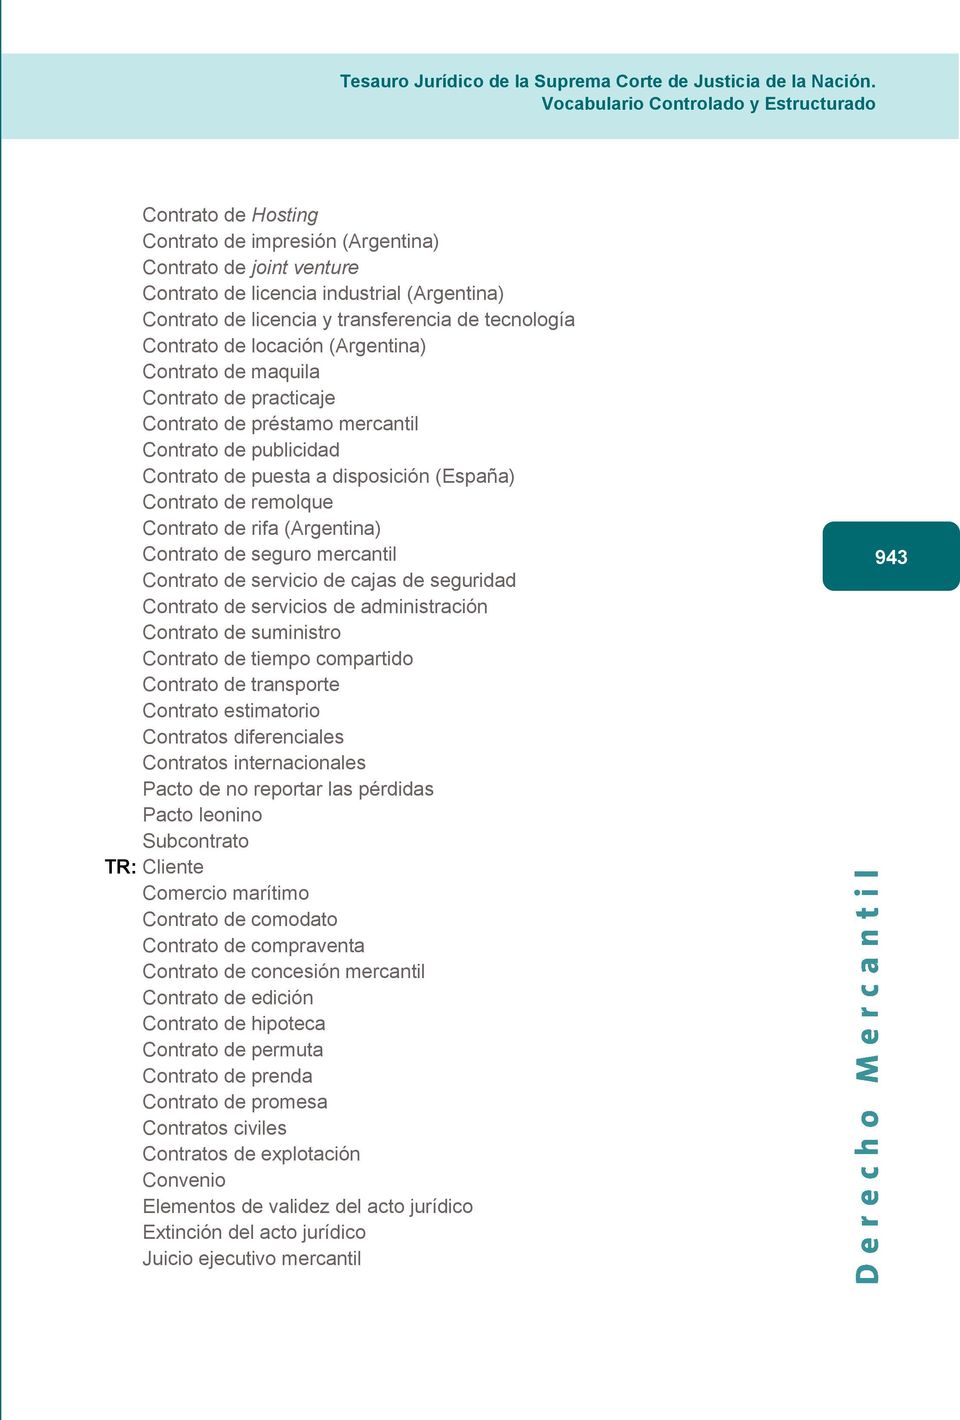 (Argentina) Contrato de seguro mercantil Contrato de servicio de cajas de seguridad Contrato de servicios de administración Contrato de suministro Contrato de tiempo compartido Contrato de transporte